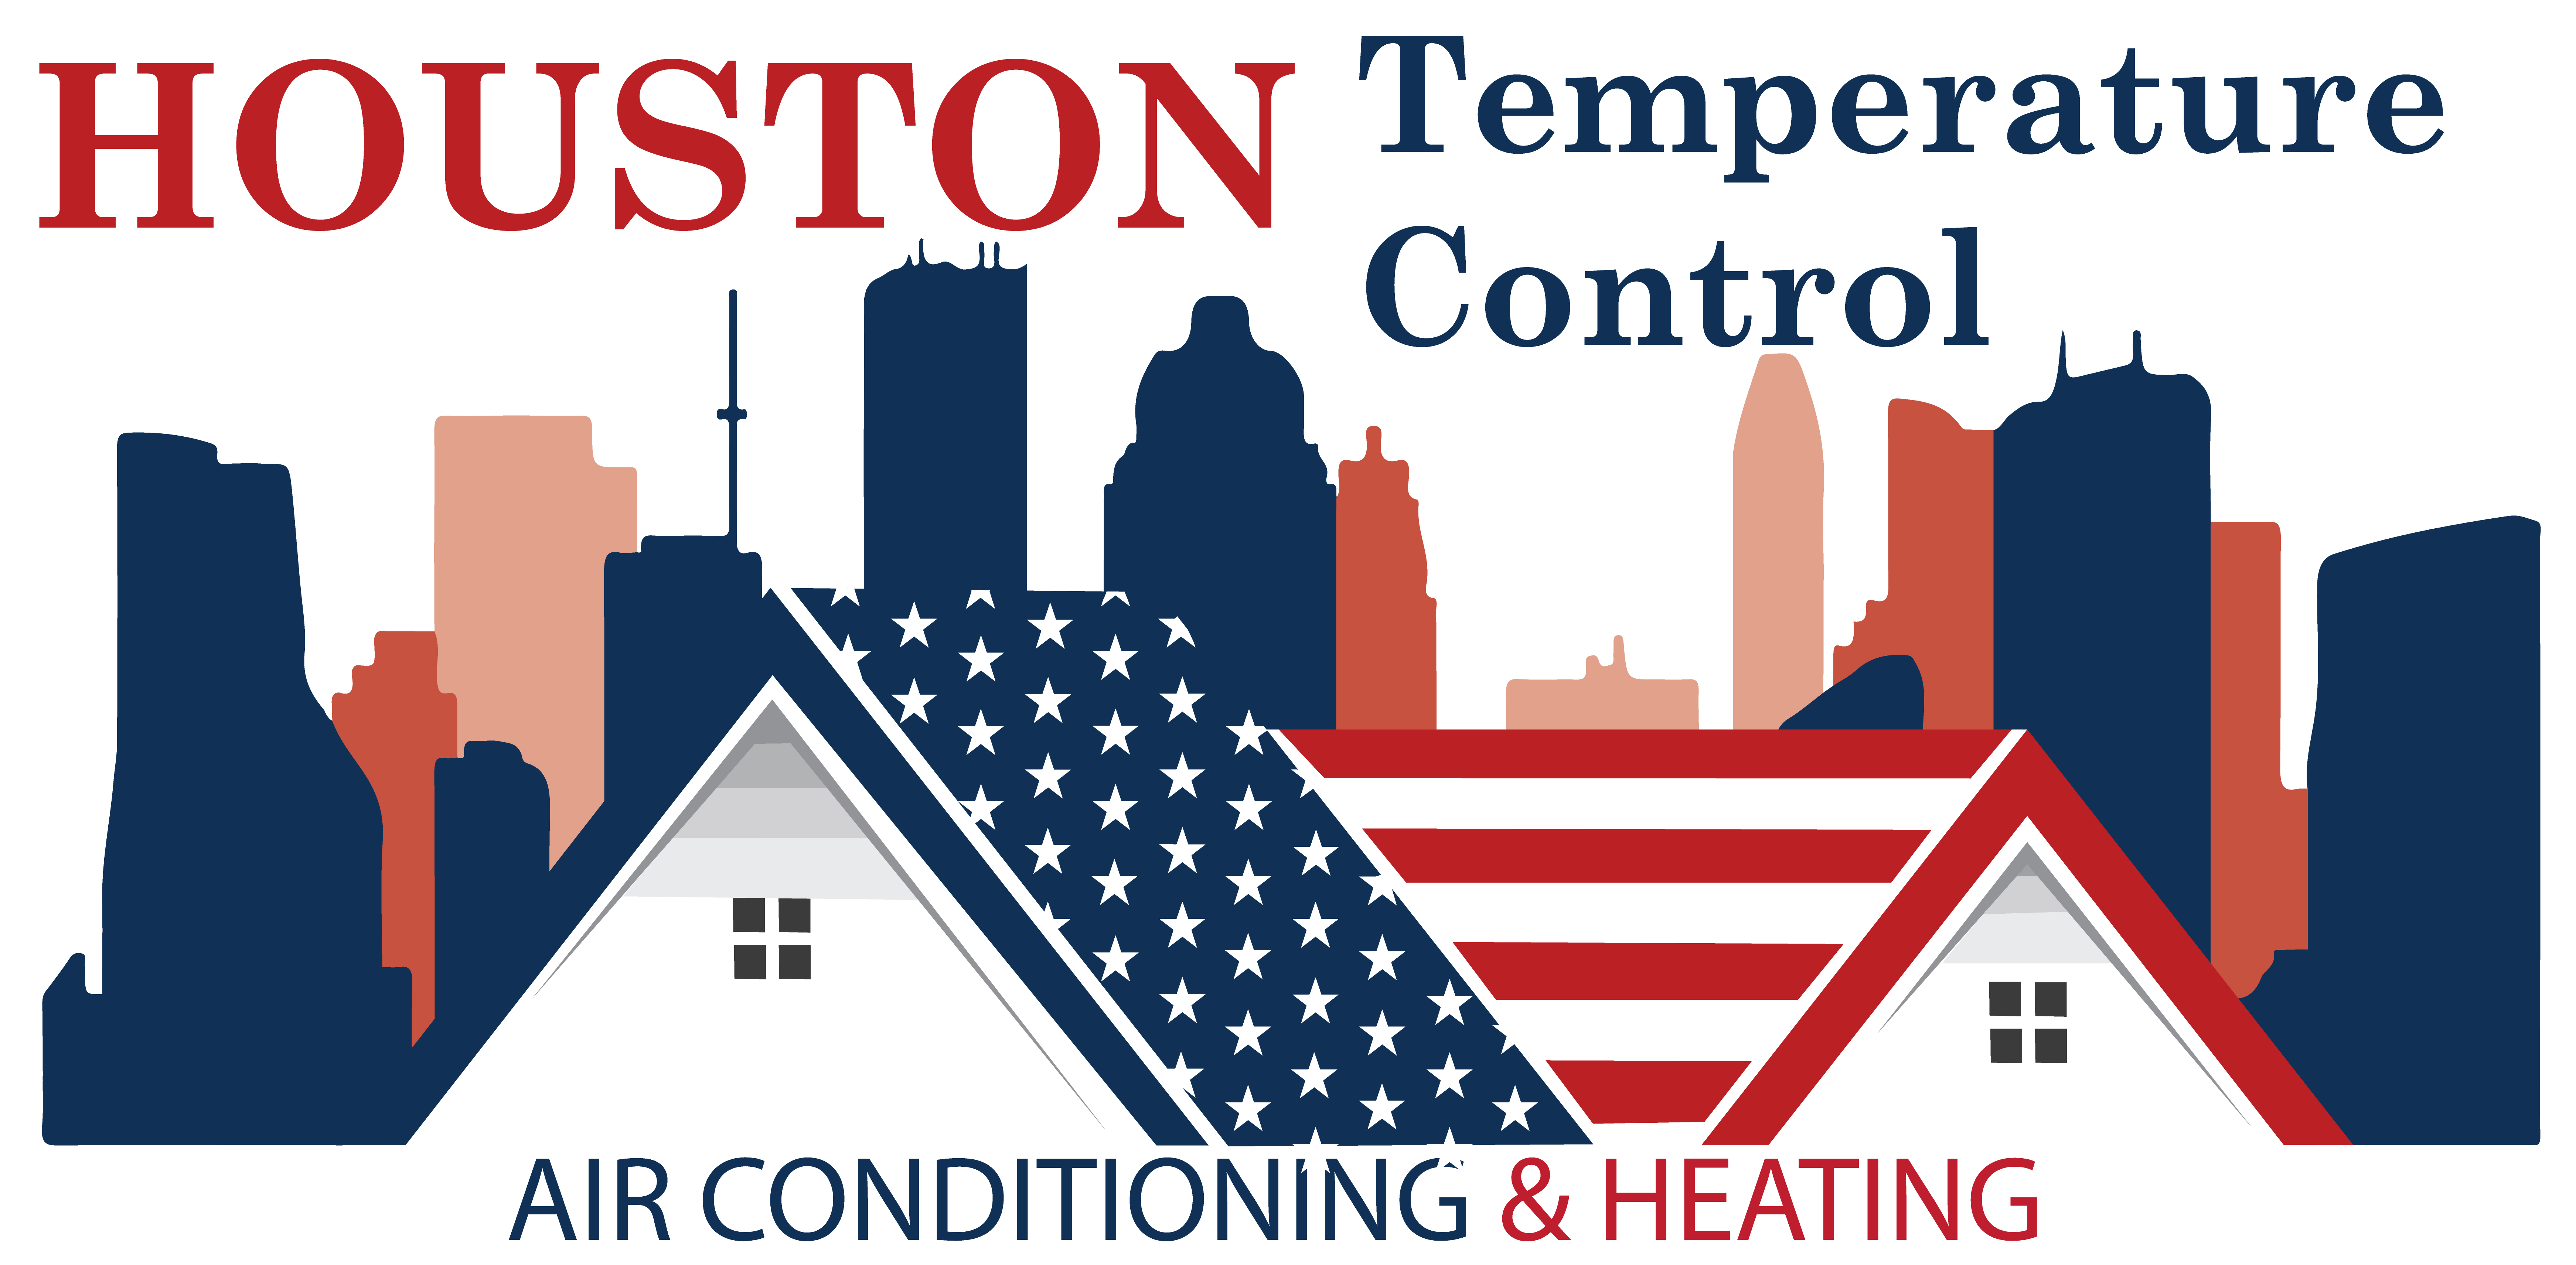 Houston Temperature Control